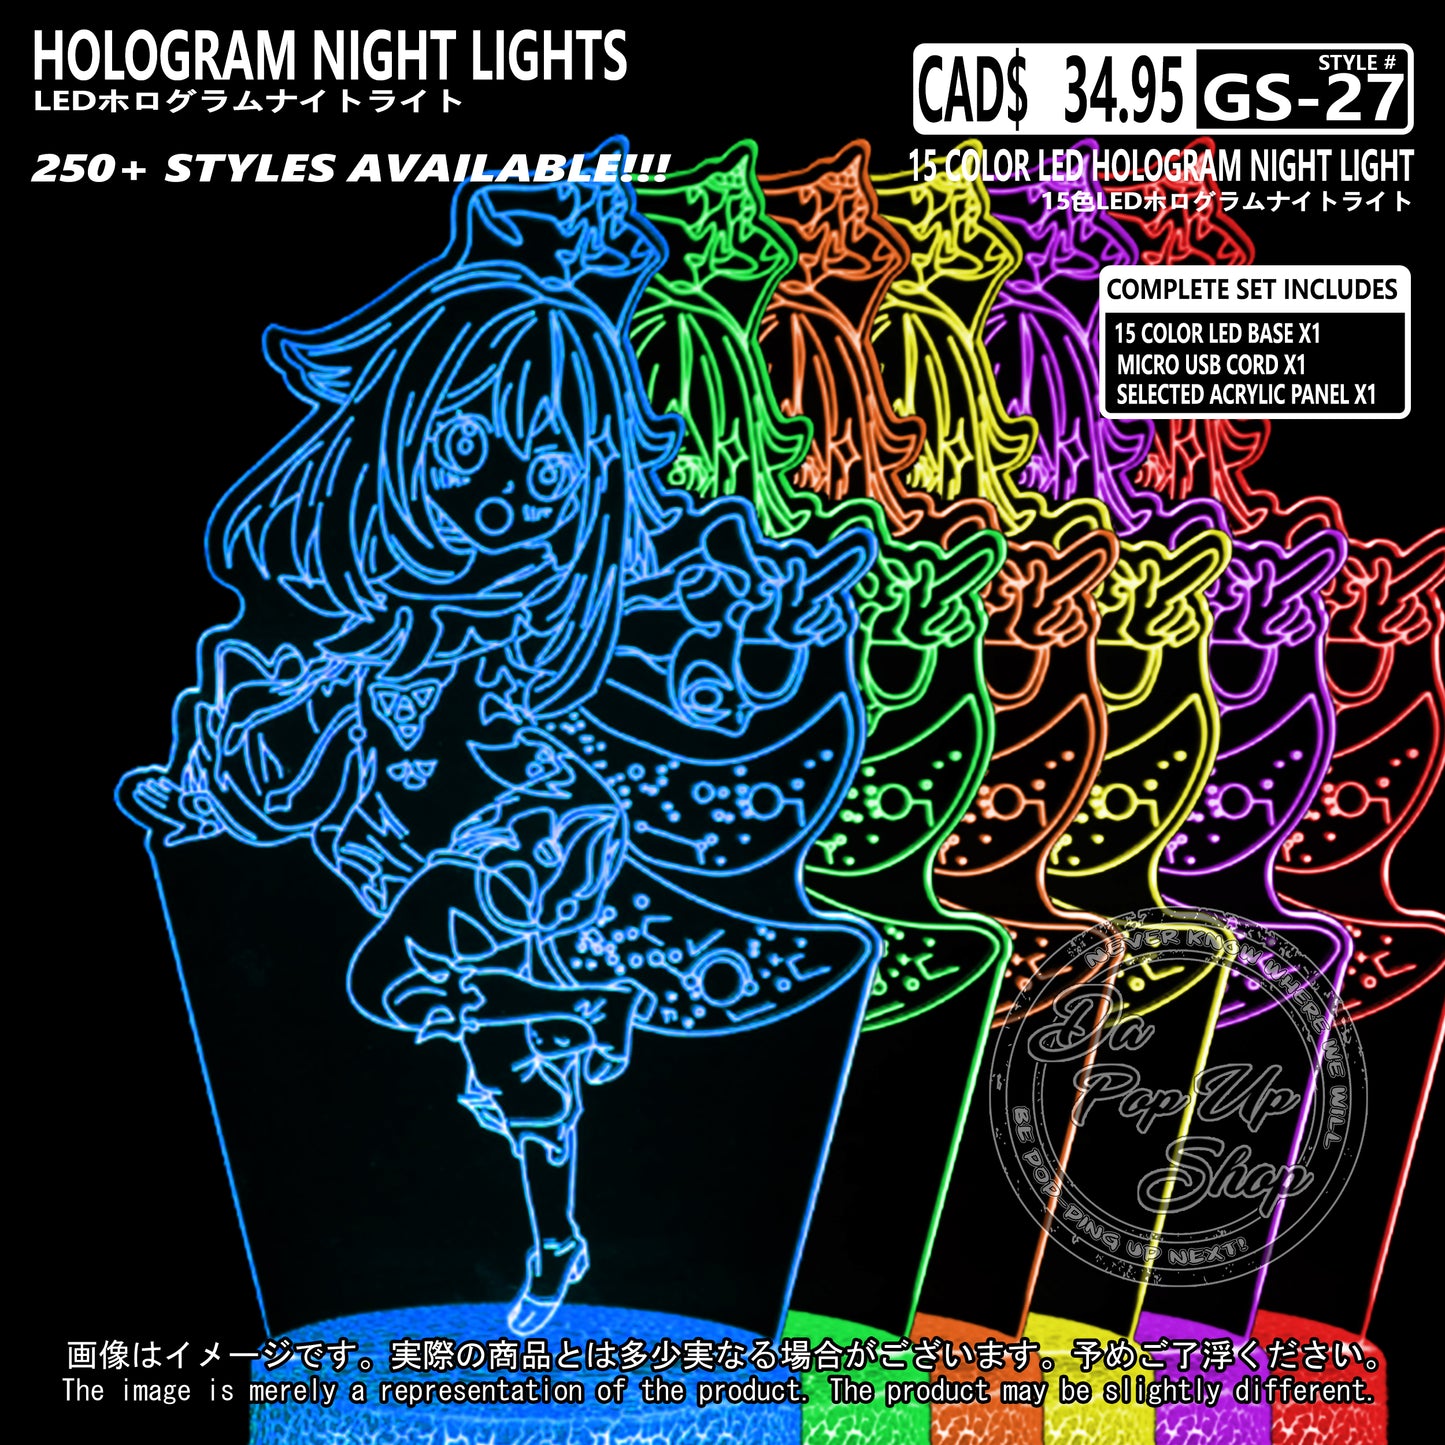 (GS-27) PAIMON Genshin Impact Hologram LED Night Light